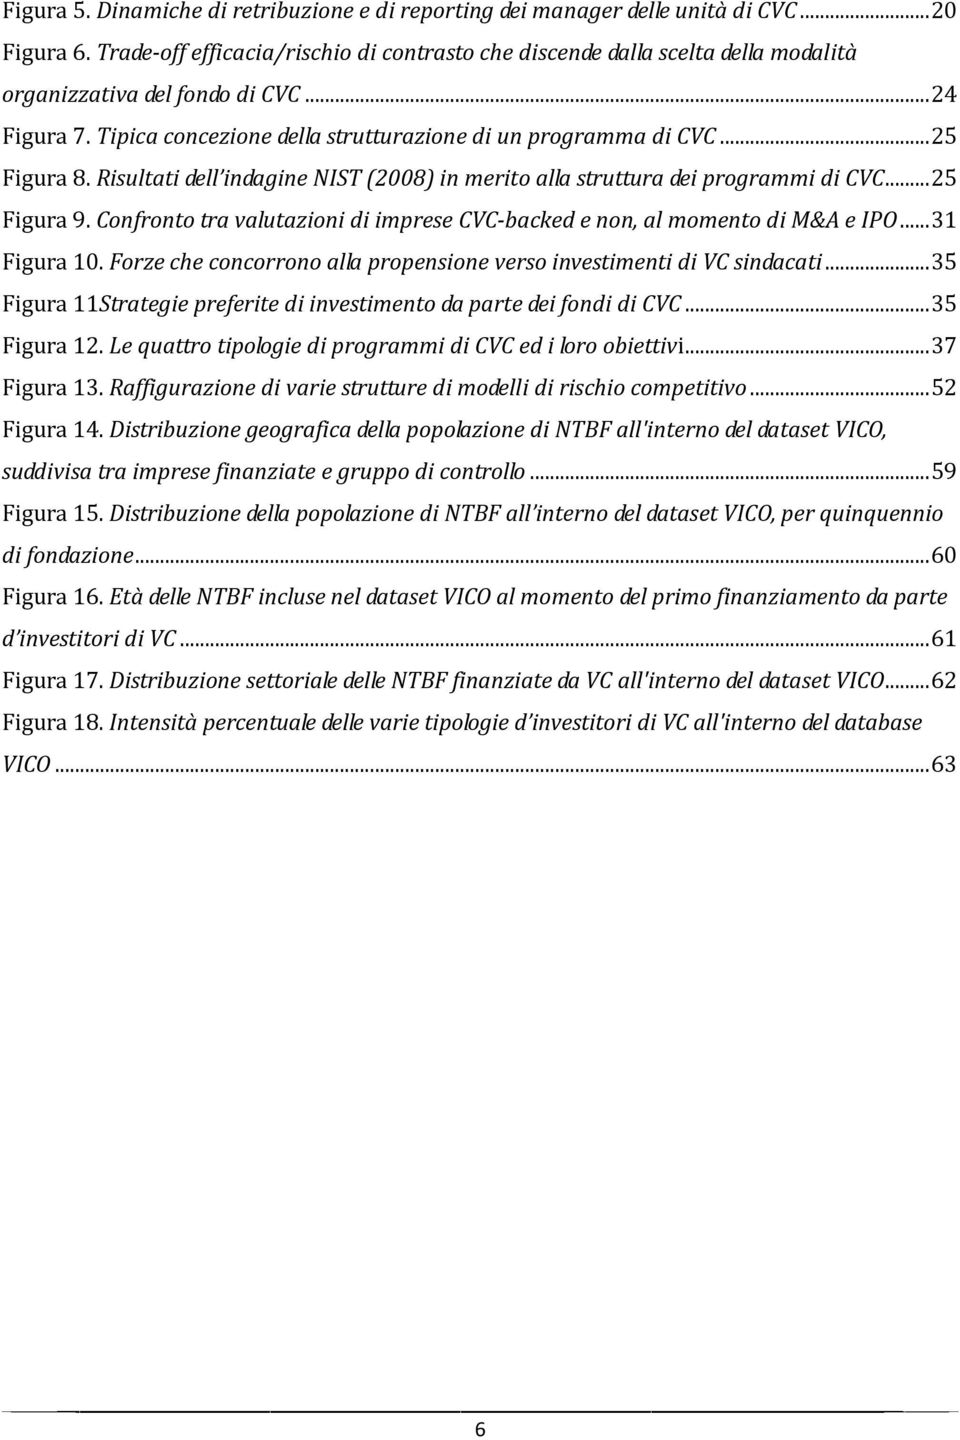 .. 25 Figura 8. Risultati dell indagine NIST (2008) in merito alla struttura dei programmi di CVC... 25 Figura 9. Confronto tra valutazioni di imprese CVC-backed e non, al momento di M&A e IPO.